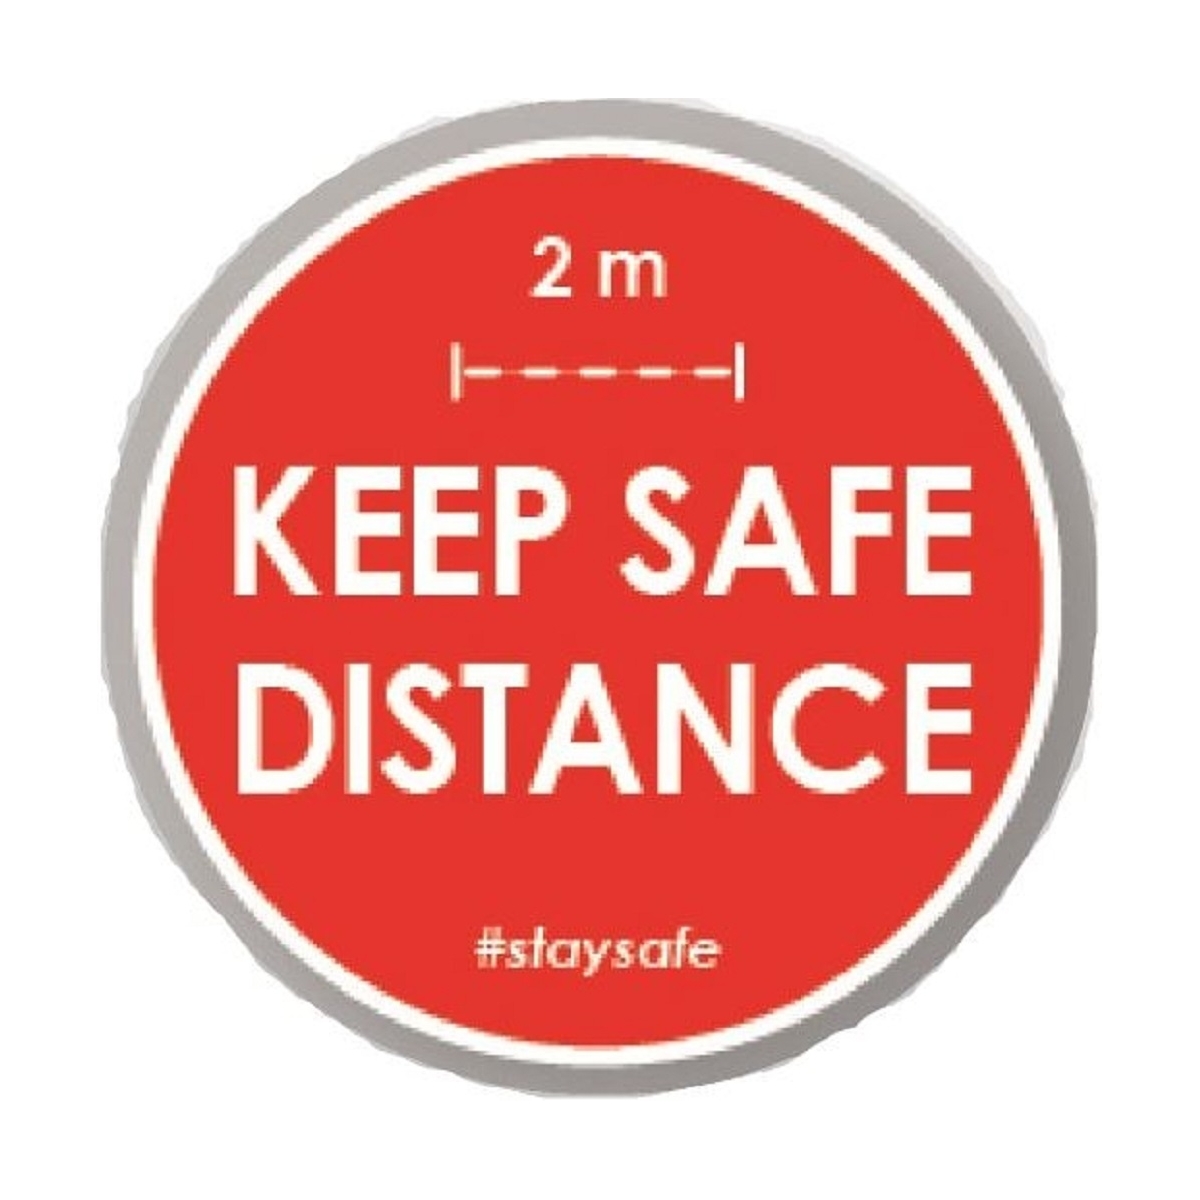 Keep safe distance